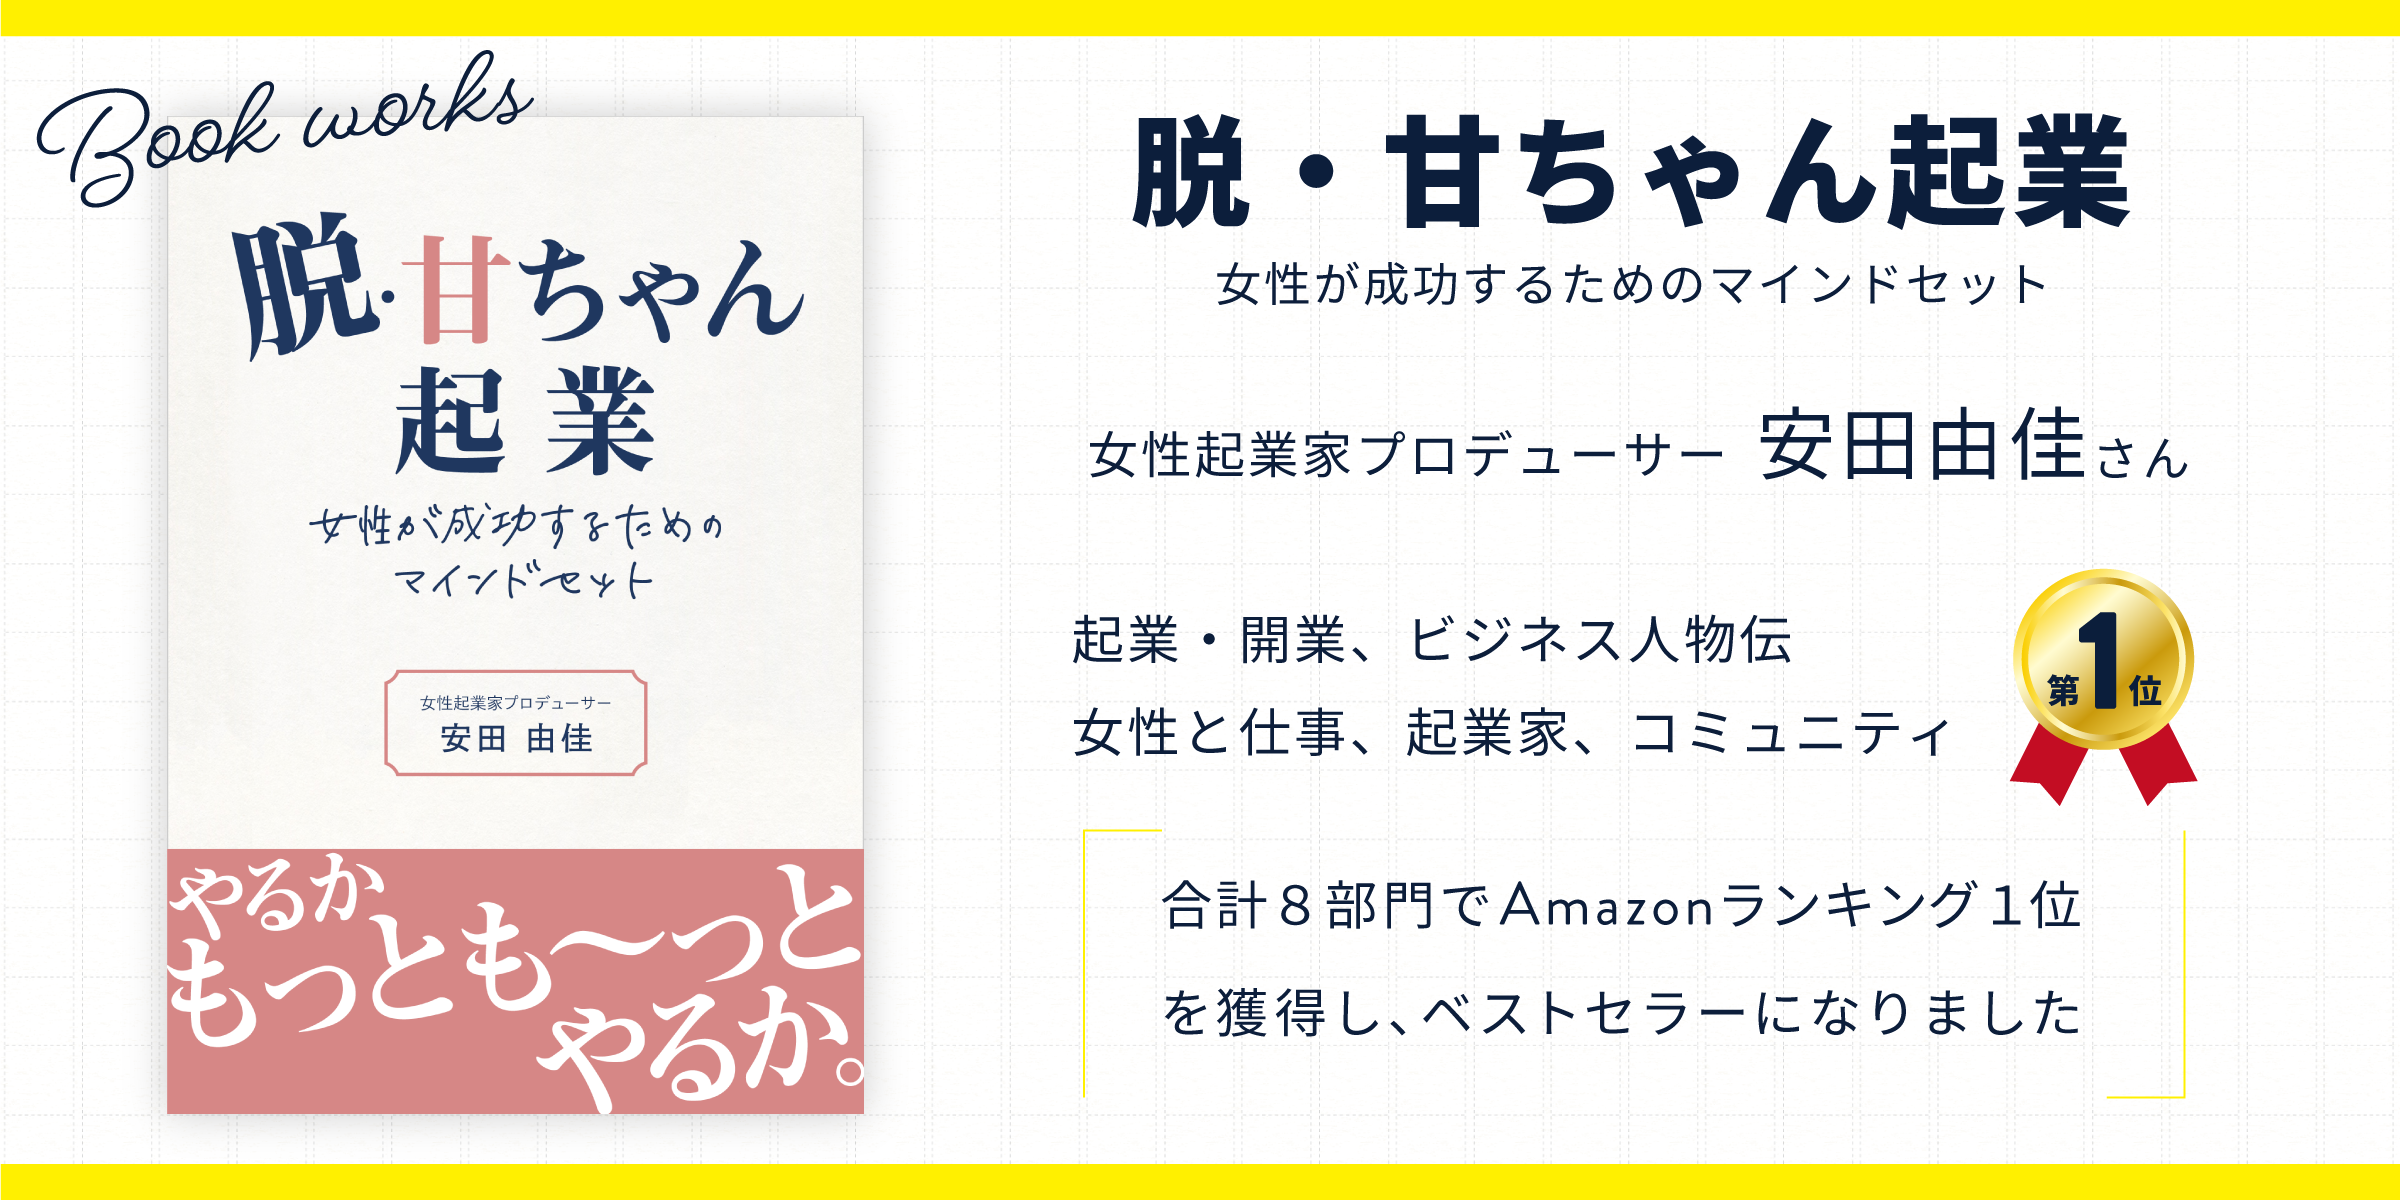 「安田由佳」さんの本が出版されました